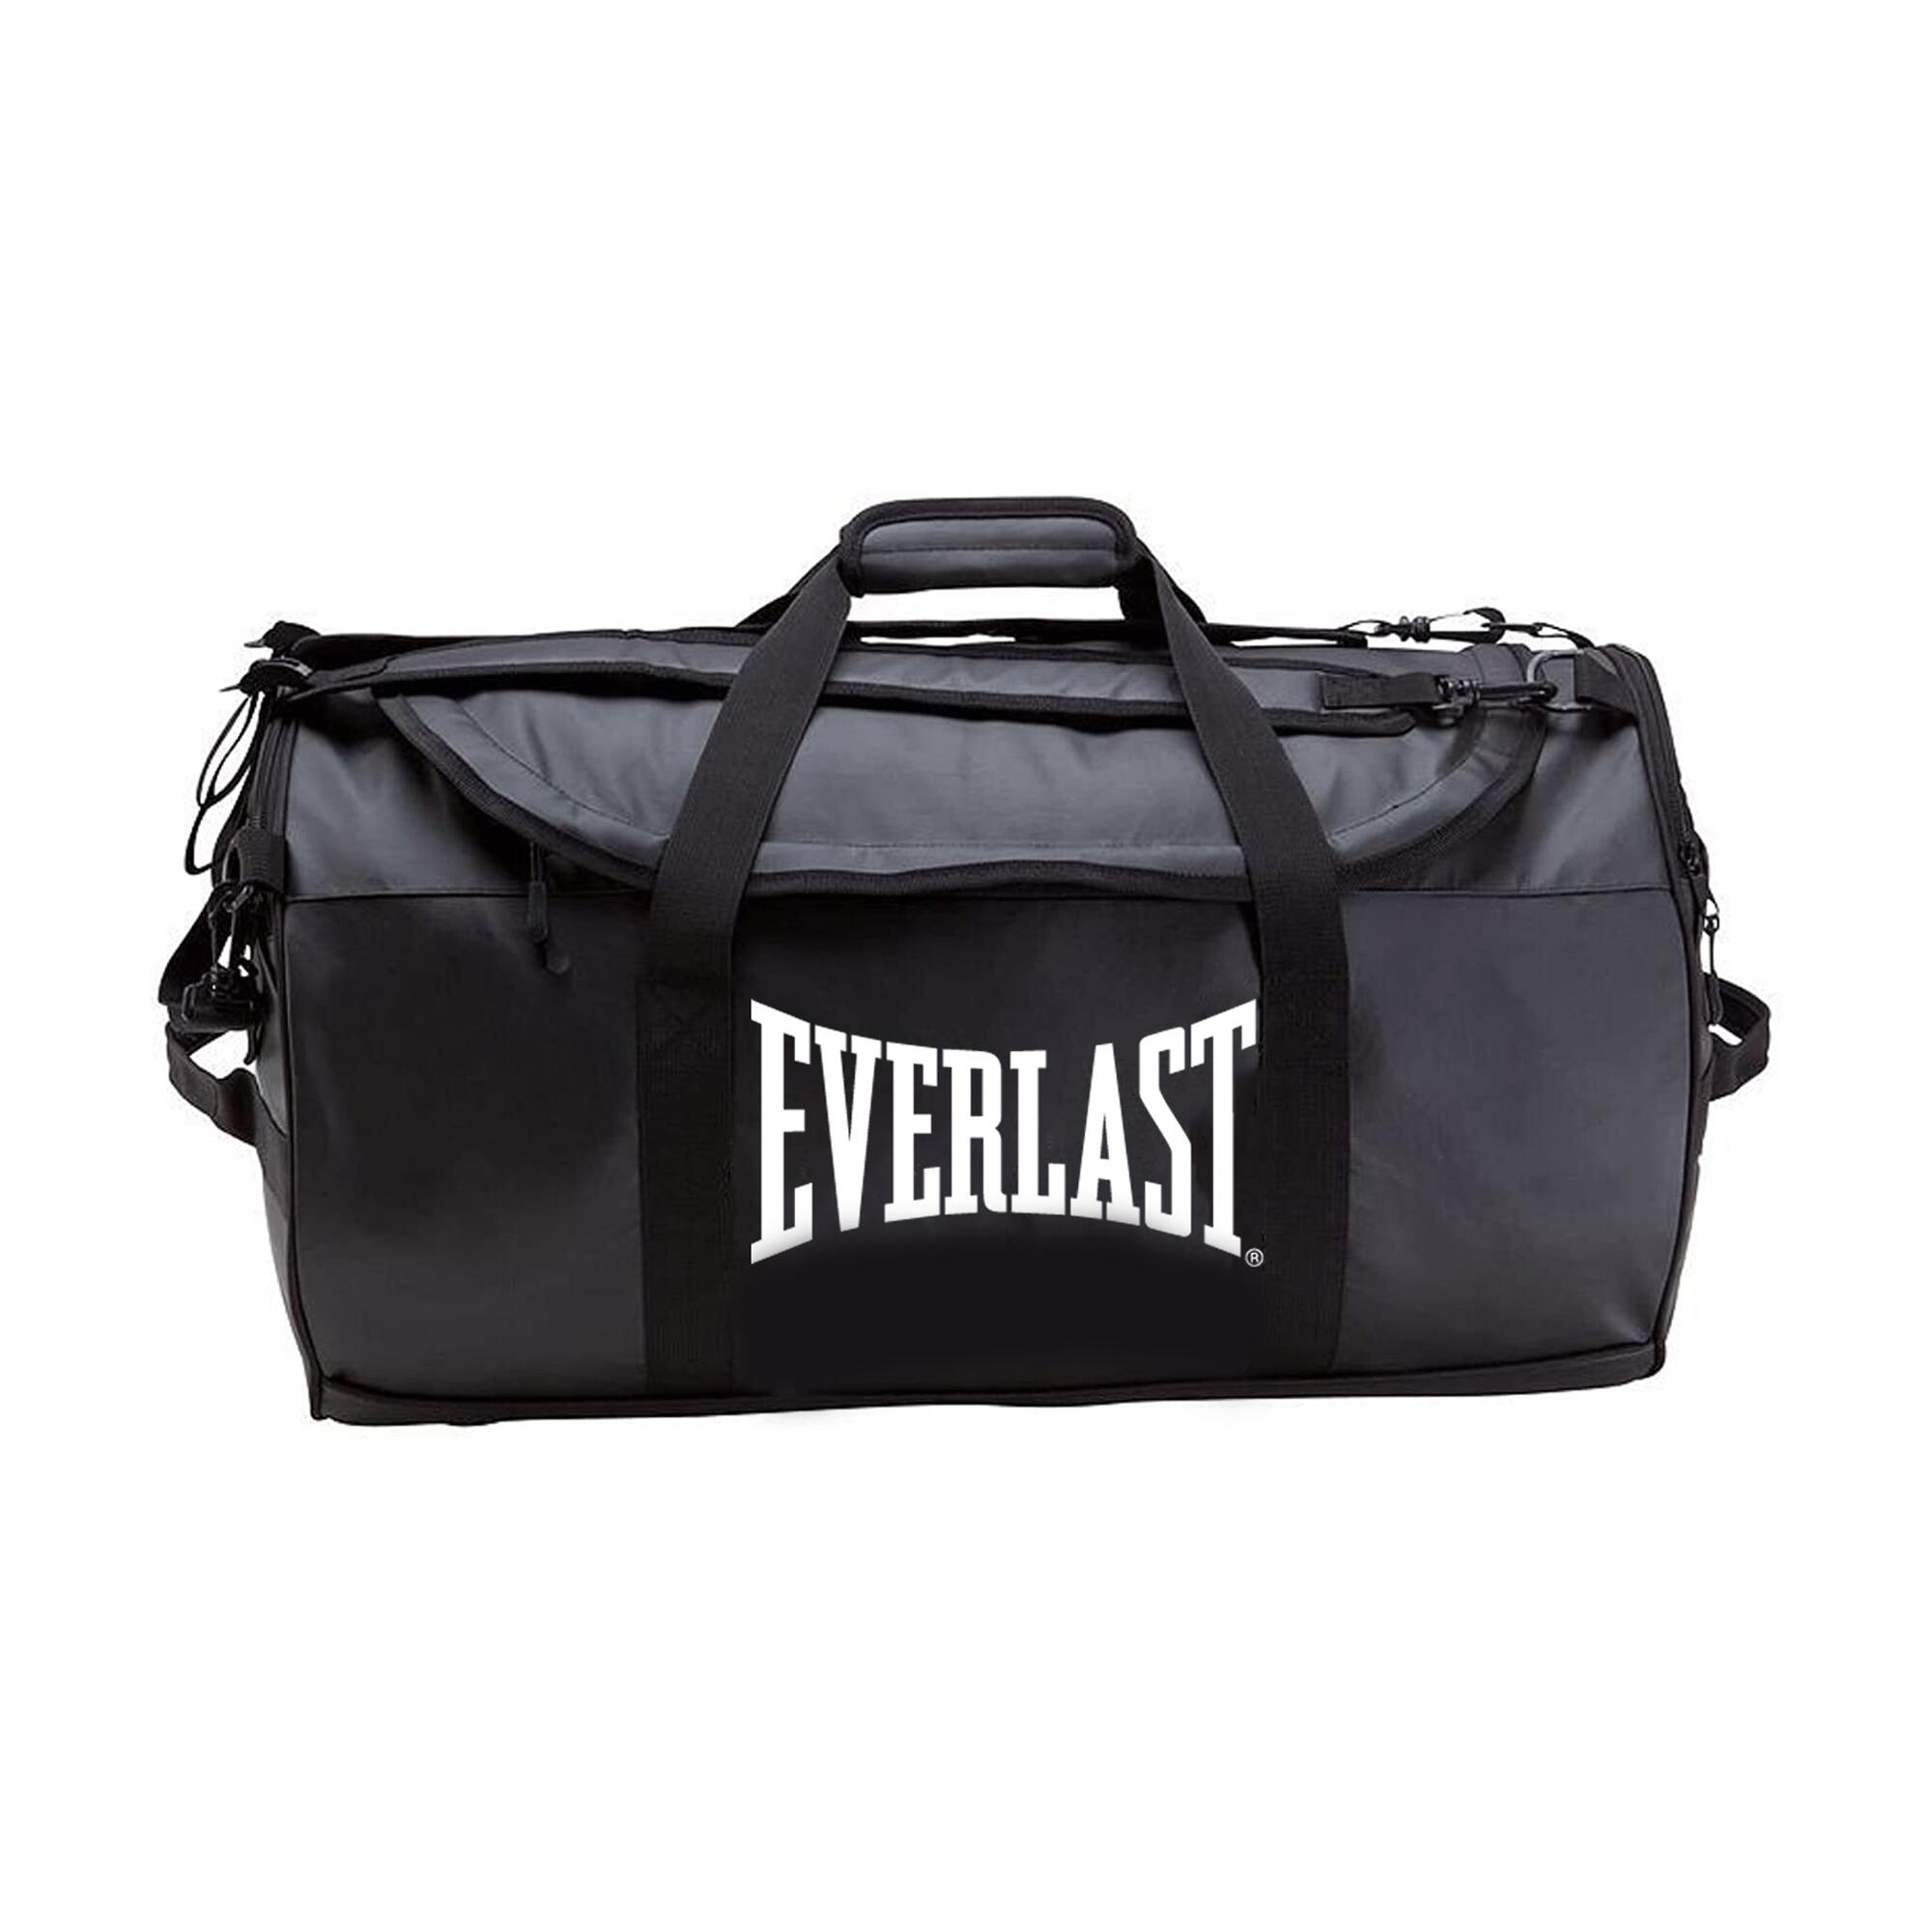 Everlast Sporttasche Trainingstasche Reisetasche Fitnesstasche Tasche 0273 